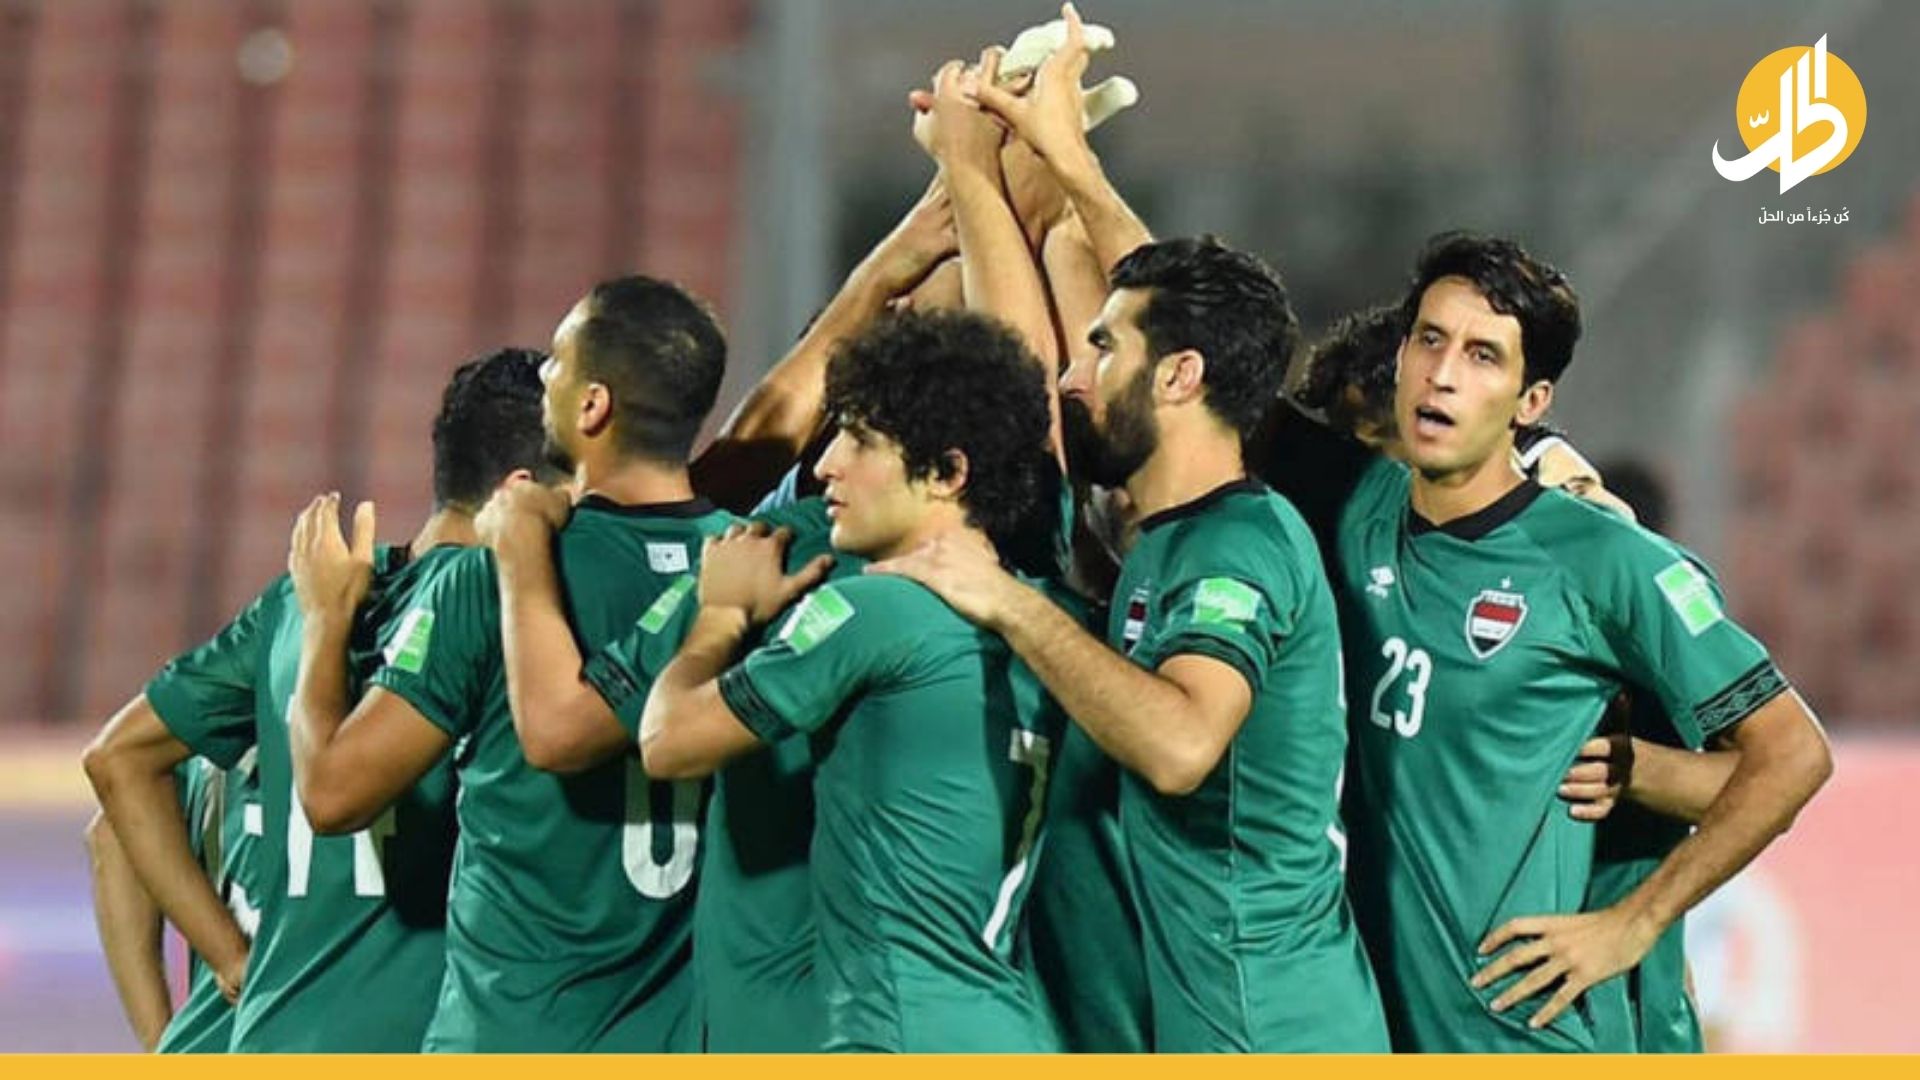 كأس العرب 2021: ما حظوظ العراق في البطولة؟